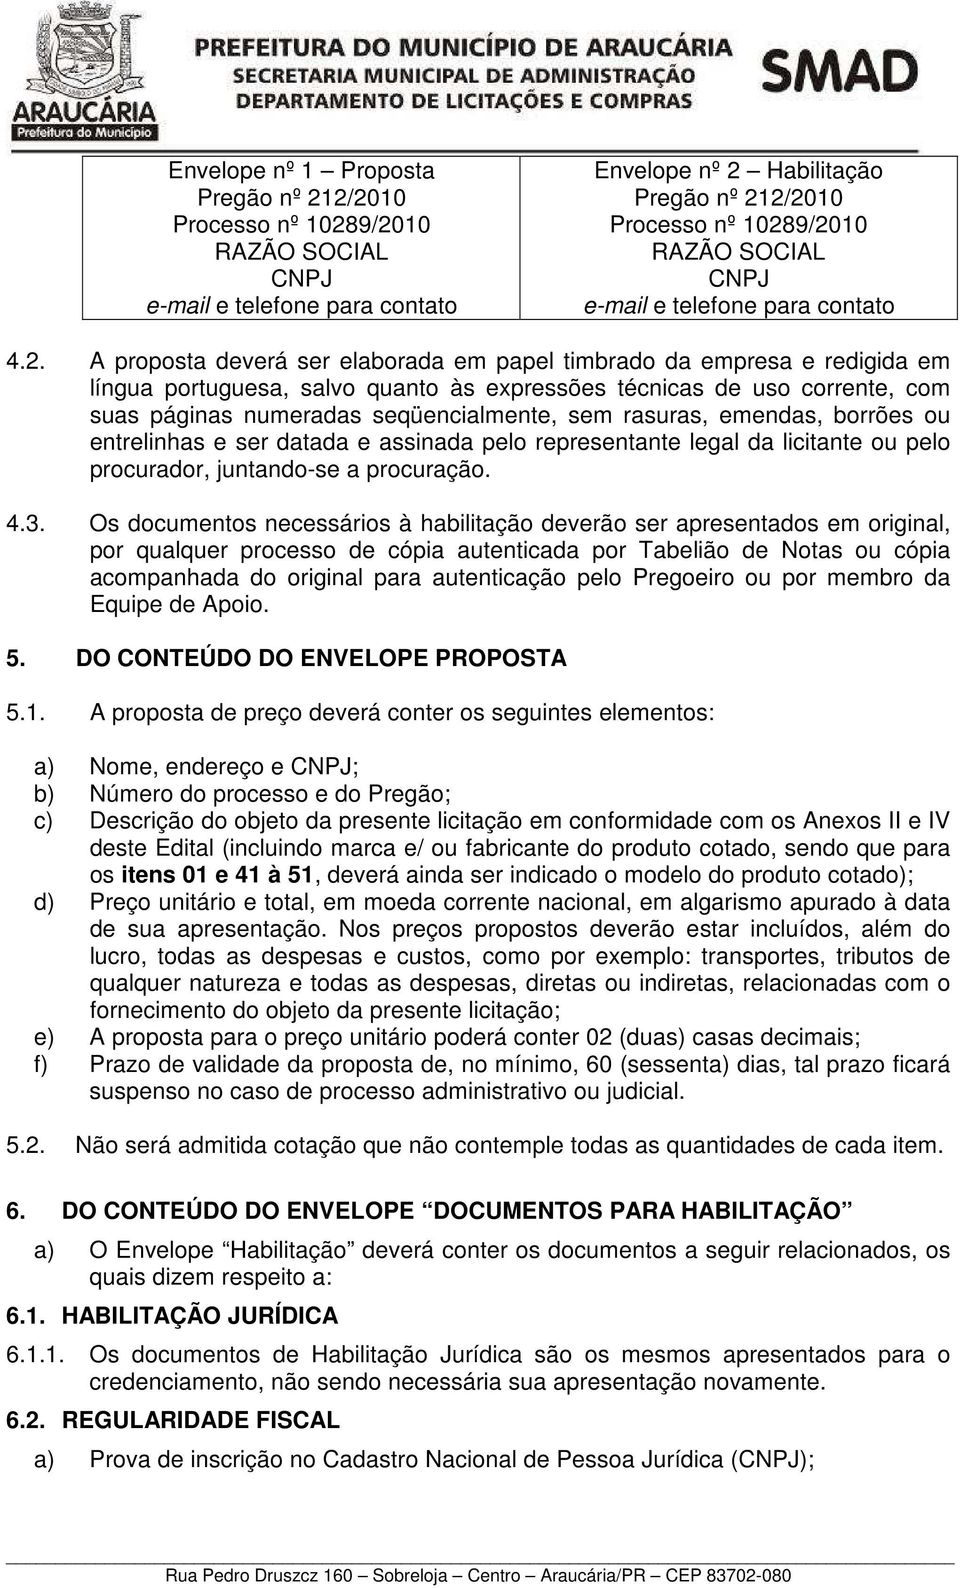 A proposta deverá ser elaborada em papel timbrado da empresa e redigida em língua portuguesa, salvo quanto às expressões técnicas de uso corrente, com suas páginas numeradas seqüencialmente, sem